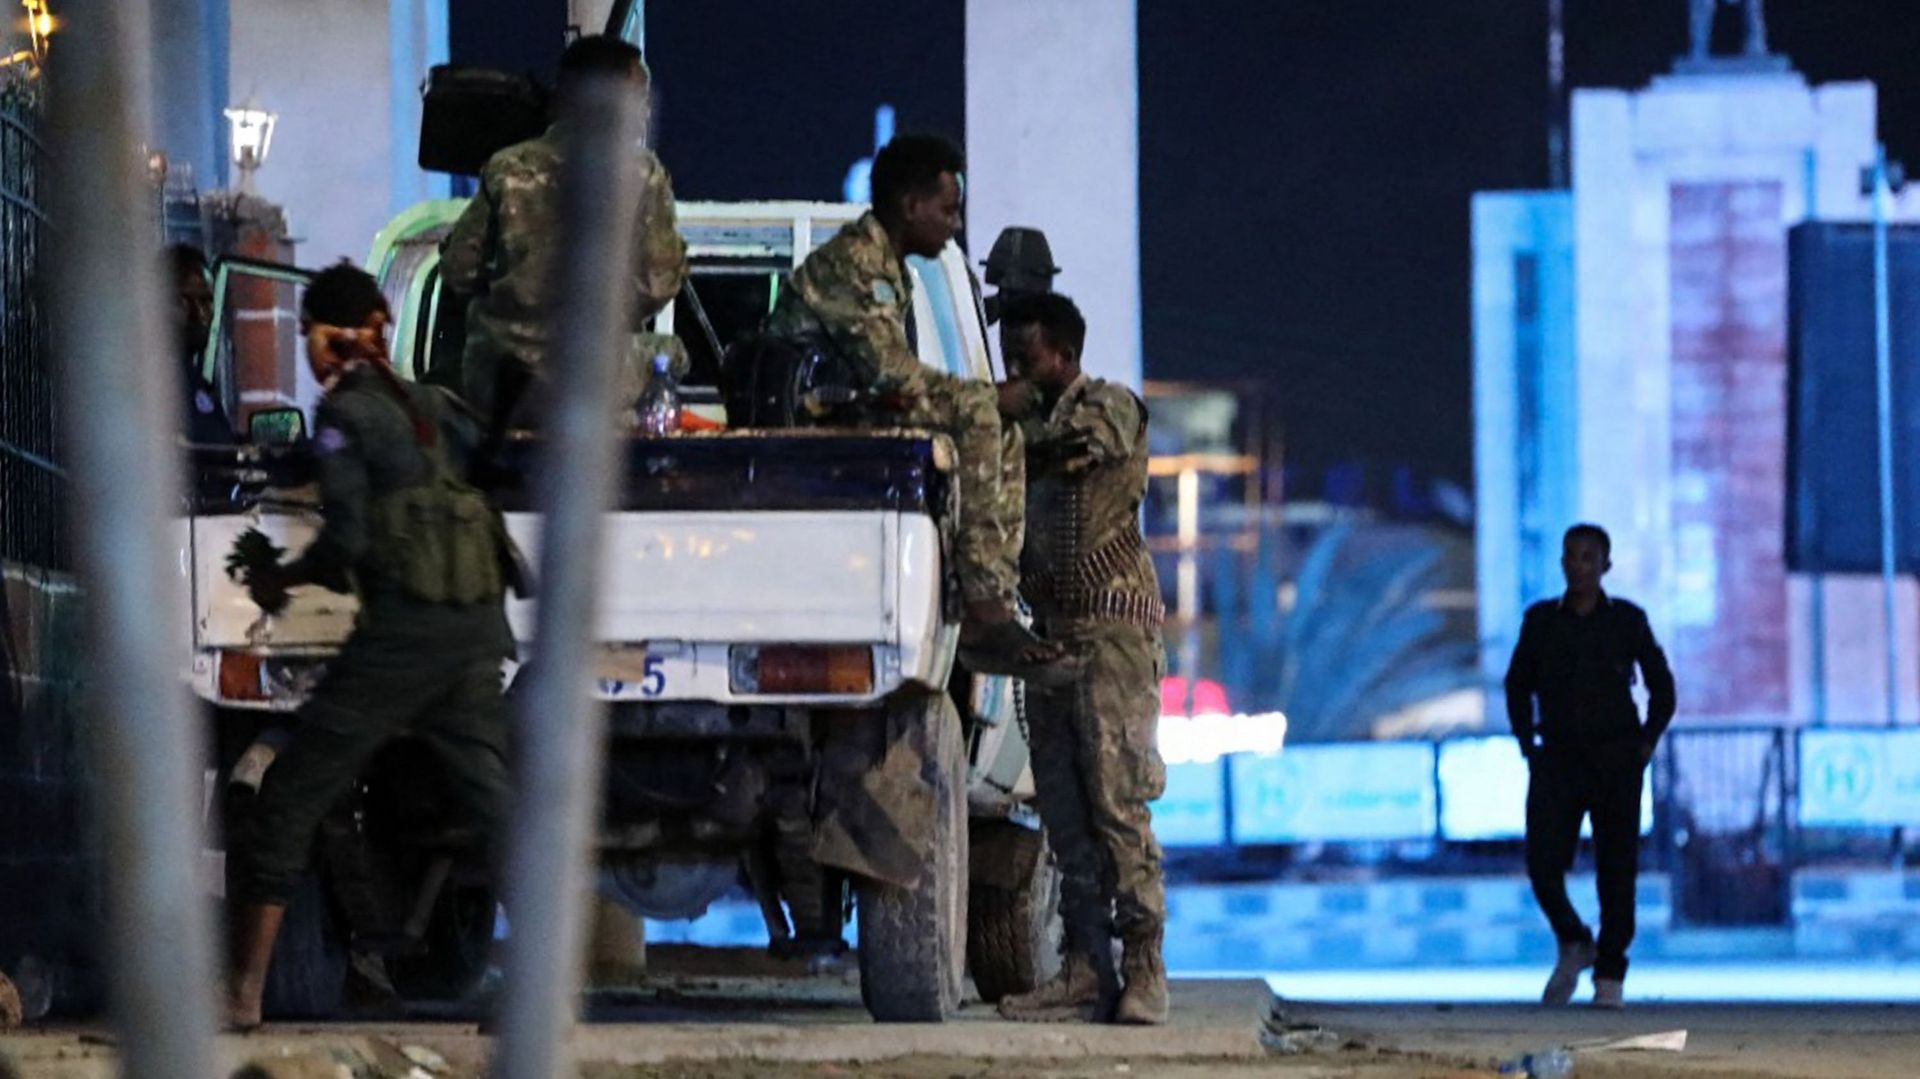 Les forces de sécurité patrouillent près de l'hôtel Hayat après une attaque des combattants d'Al-Shabaab à Mogadiscio le 20 août 2022. Des combattants d'Al-Shabaab ont attaqué un hôtel de la capitale somalienne Mogadiscio dans une grêle de coups de feu et